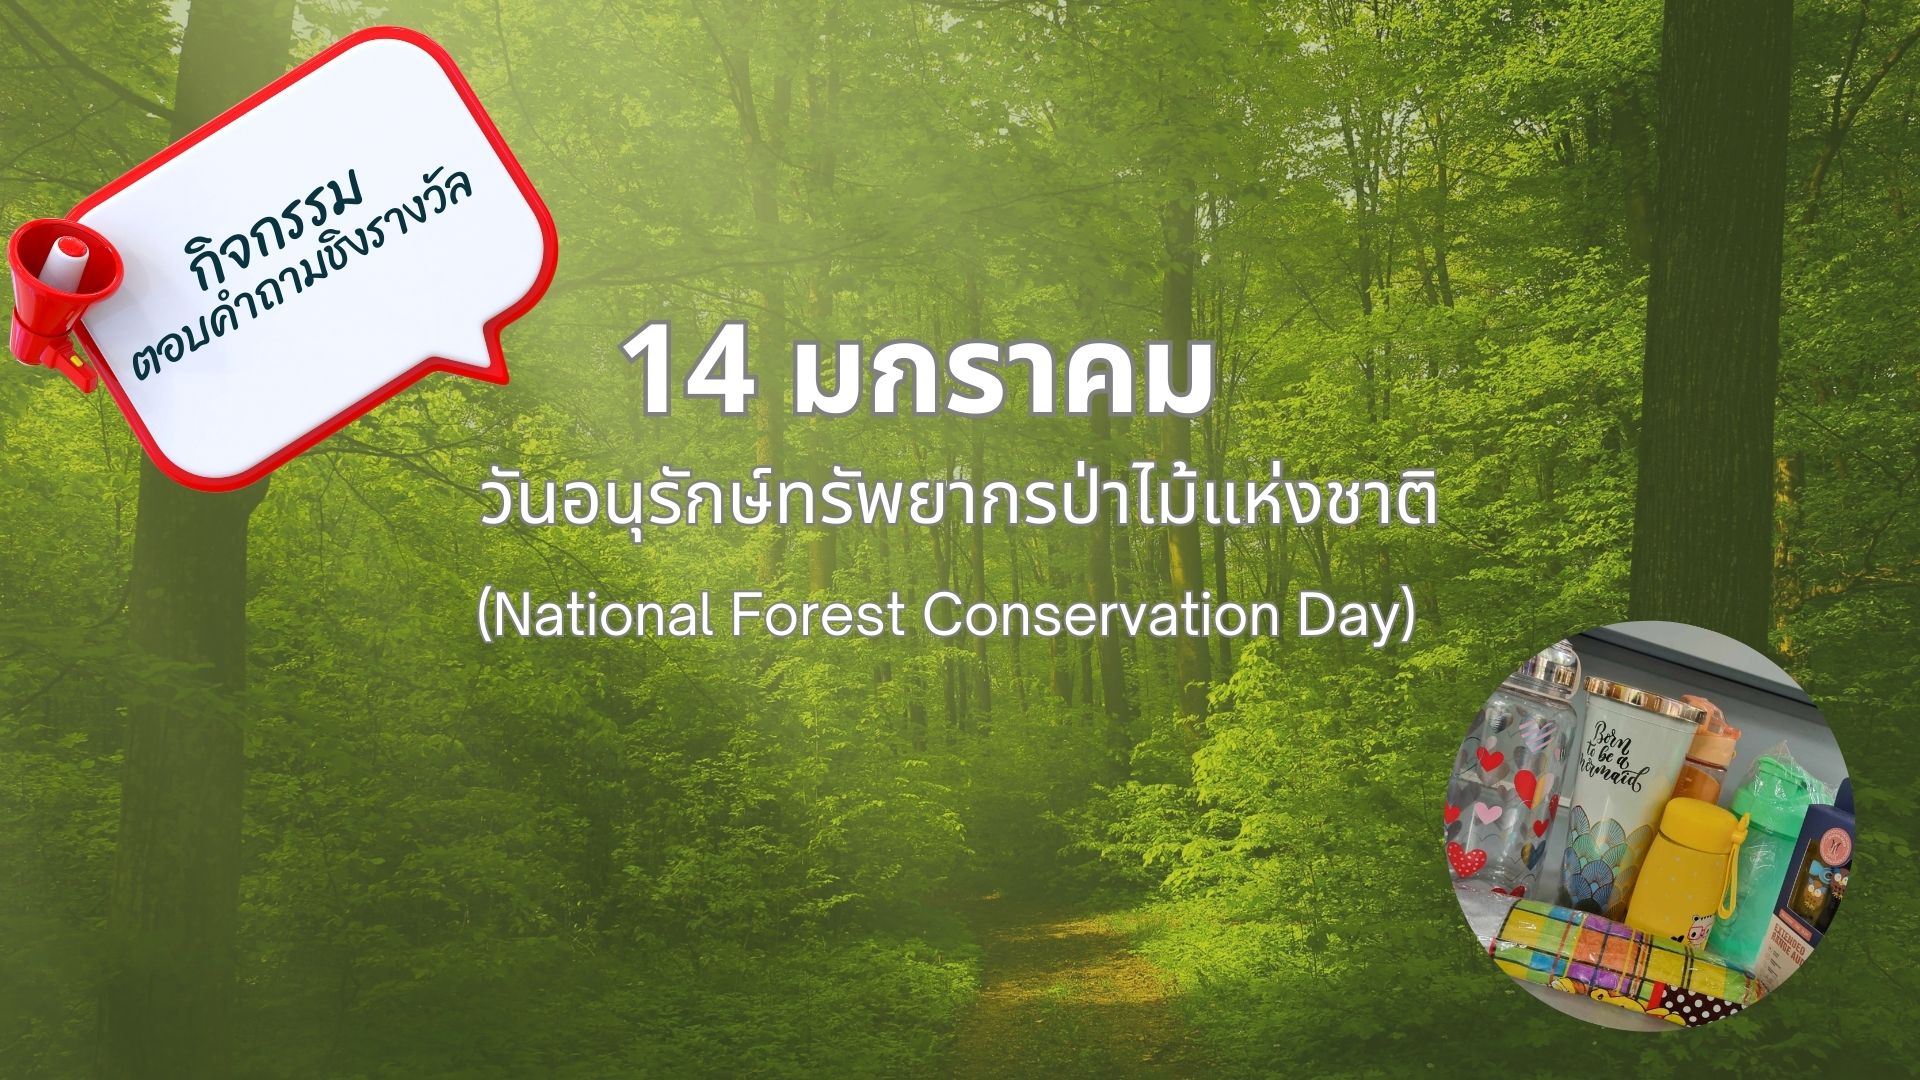 สำนักวิทยาบริการฯ เชิญชวนทุกท่านร่วมกิจกรรมตอบคำถามชิงรางวัล เนื่องใน 14 มกราคม วันอนุรักษ์ทรัพยากรป่าไม้แห่งชาติ (National Forest Conservation Day) 